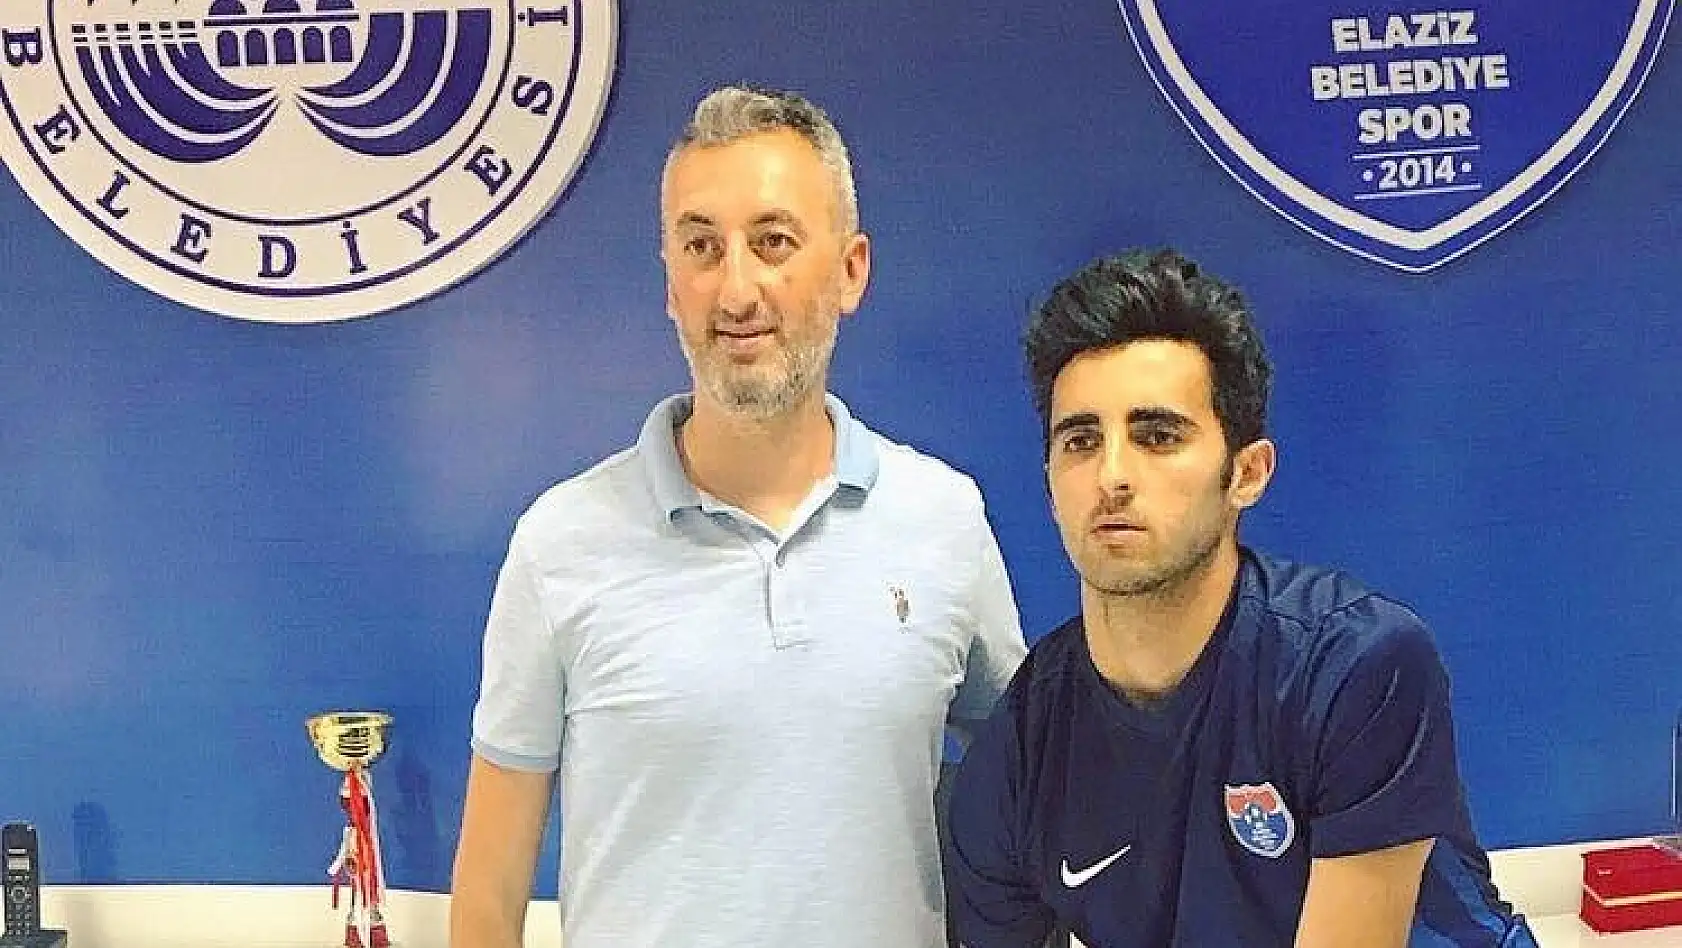 Yeni Malatyaspor Furkan Yiğit'i Elaziz Belediyespor'a kiraladı 